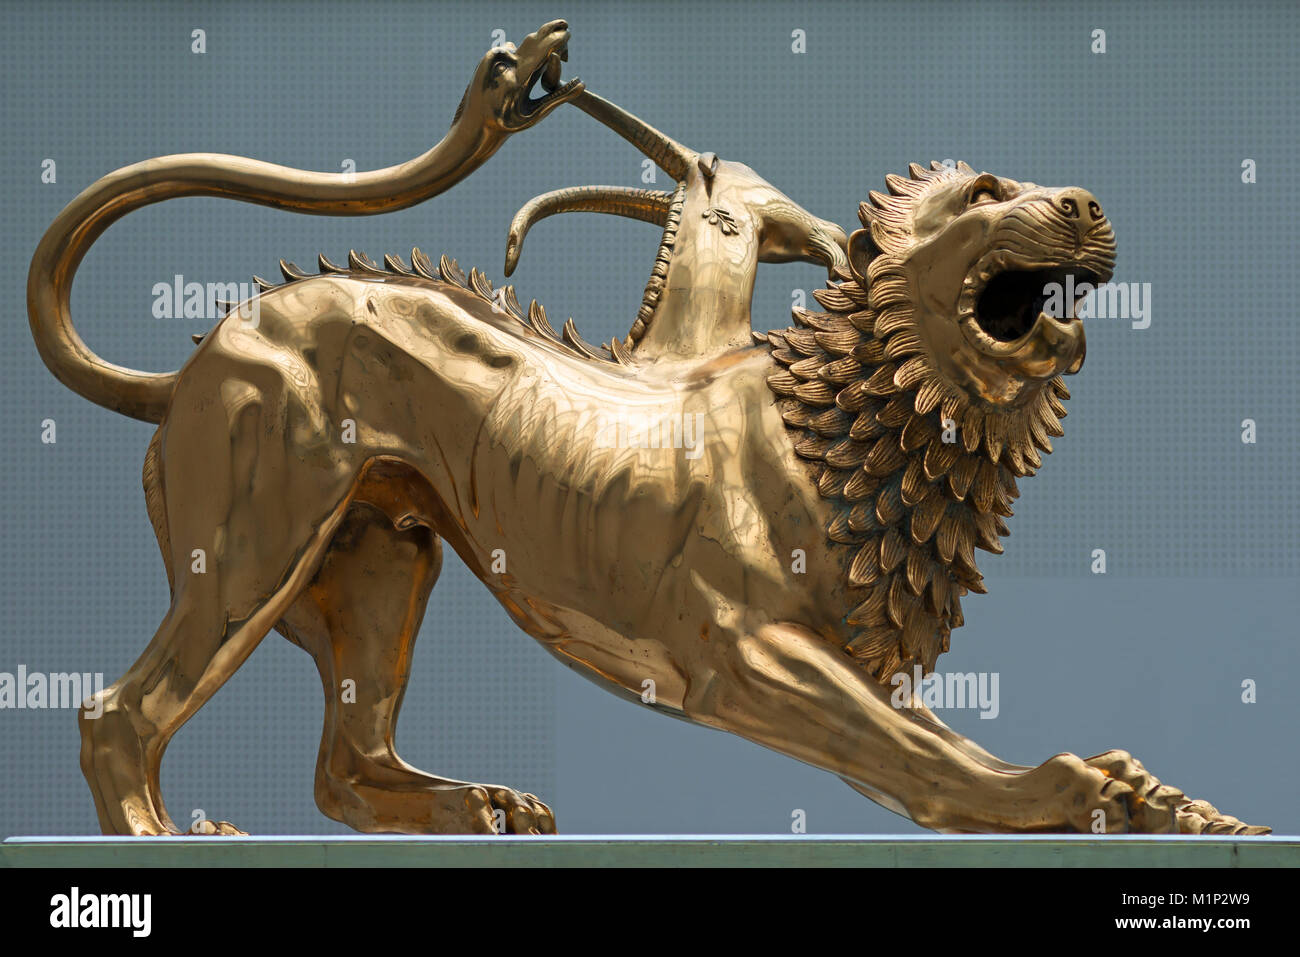 Copie d'un lion étrusque de la culture de Villanova, 9ème-8ème siècle avant J.C.,glyptotheque,Paris,Haute-bavière, Allemagne Banque D'Images